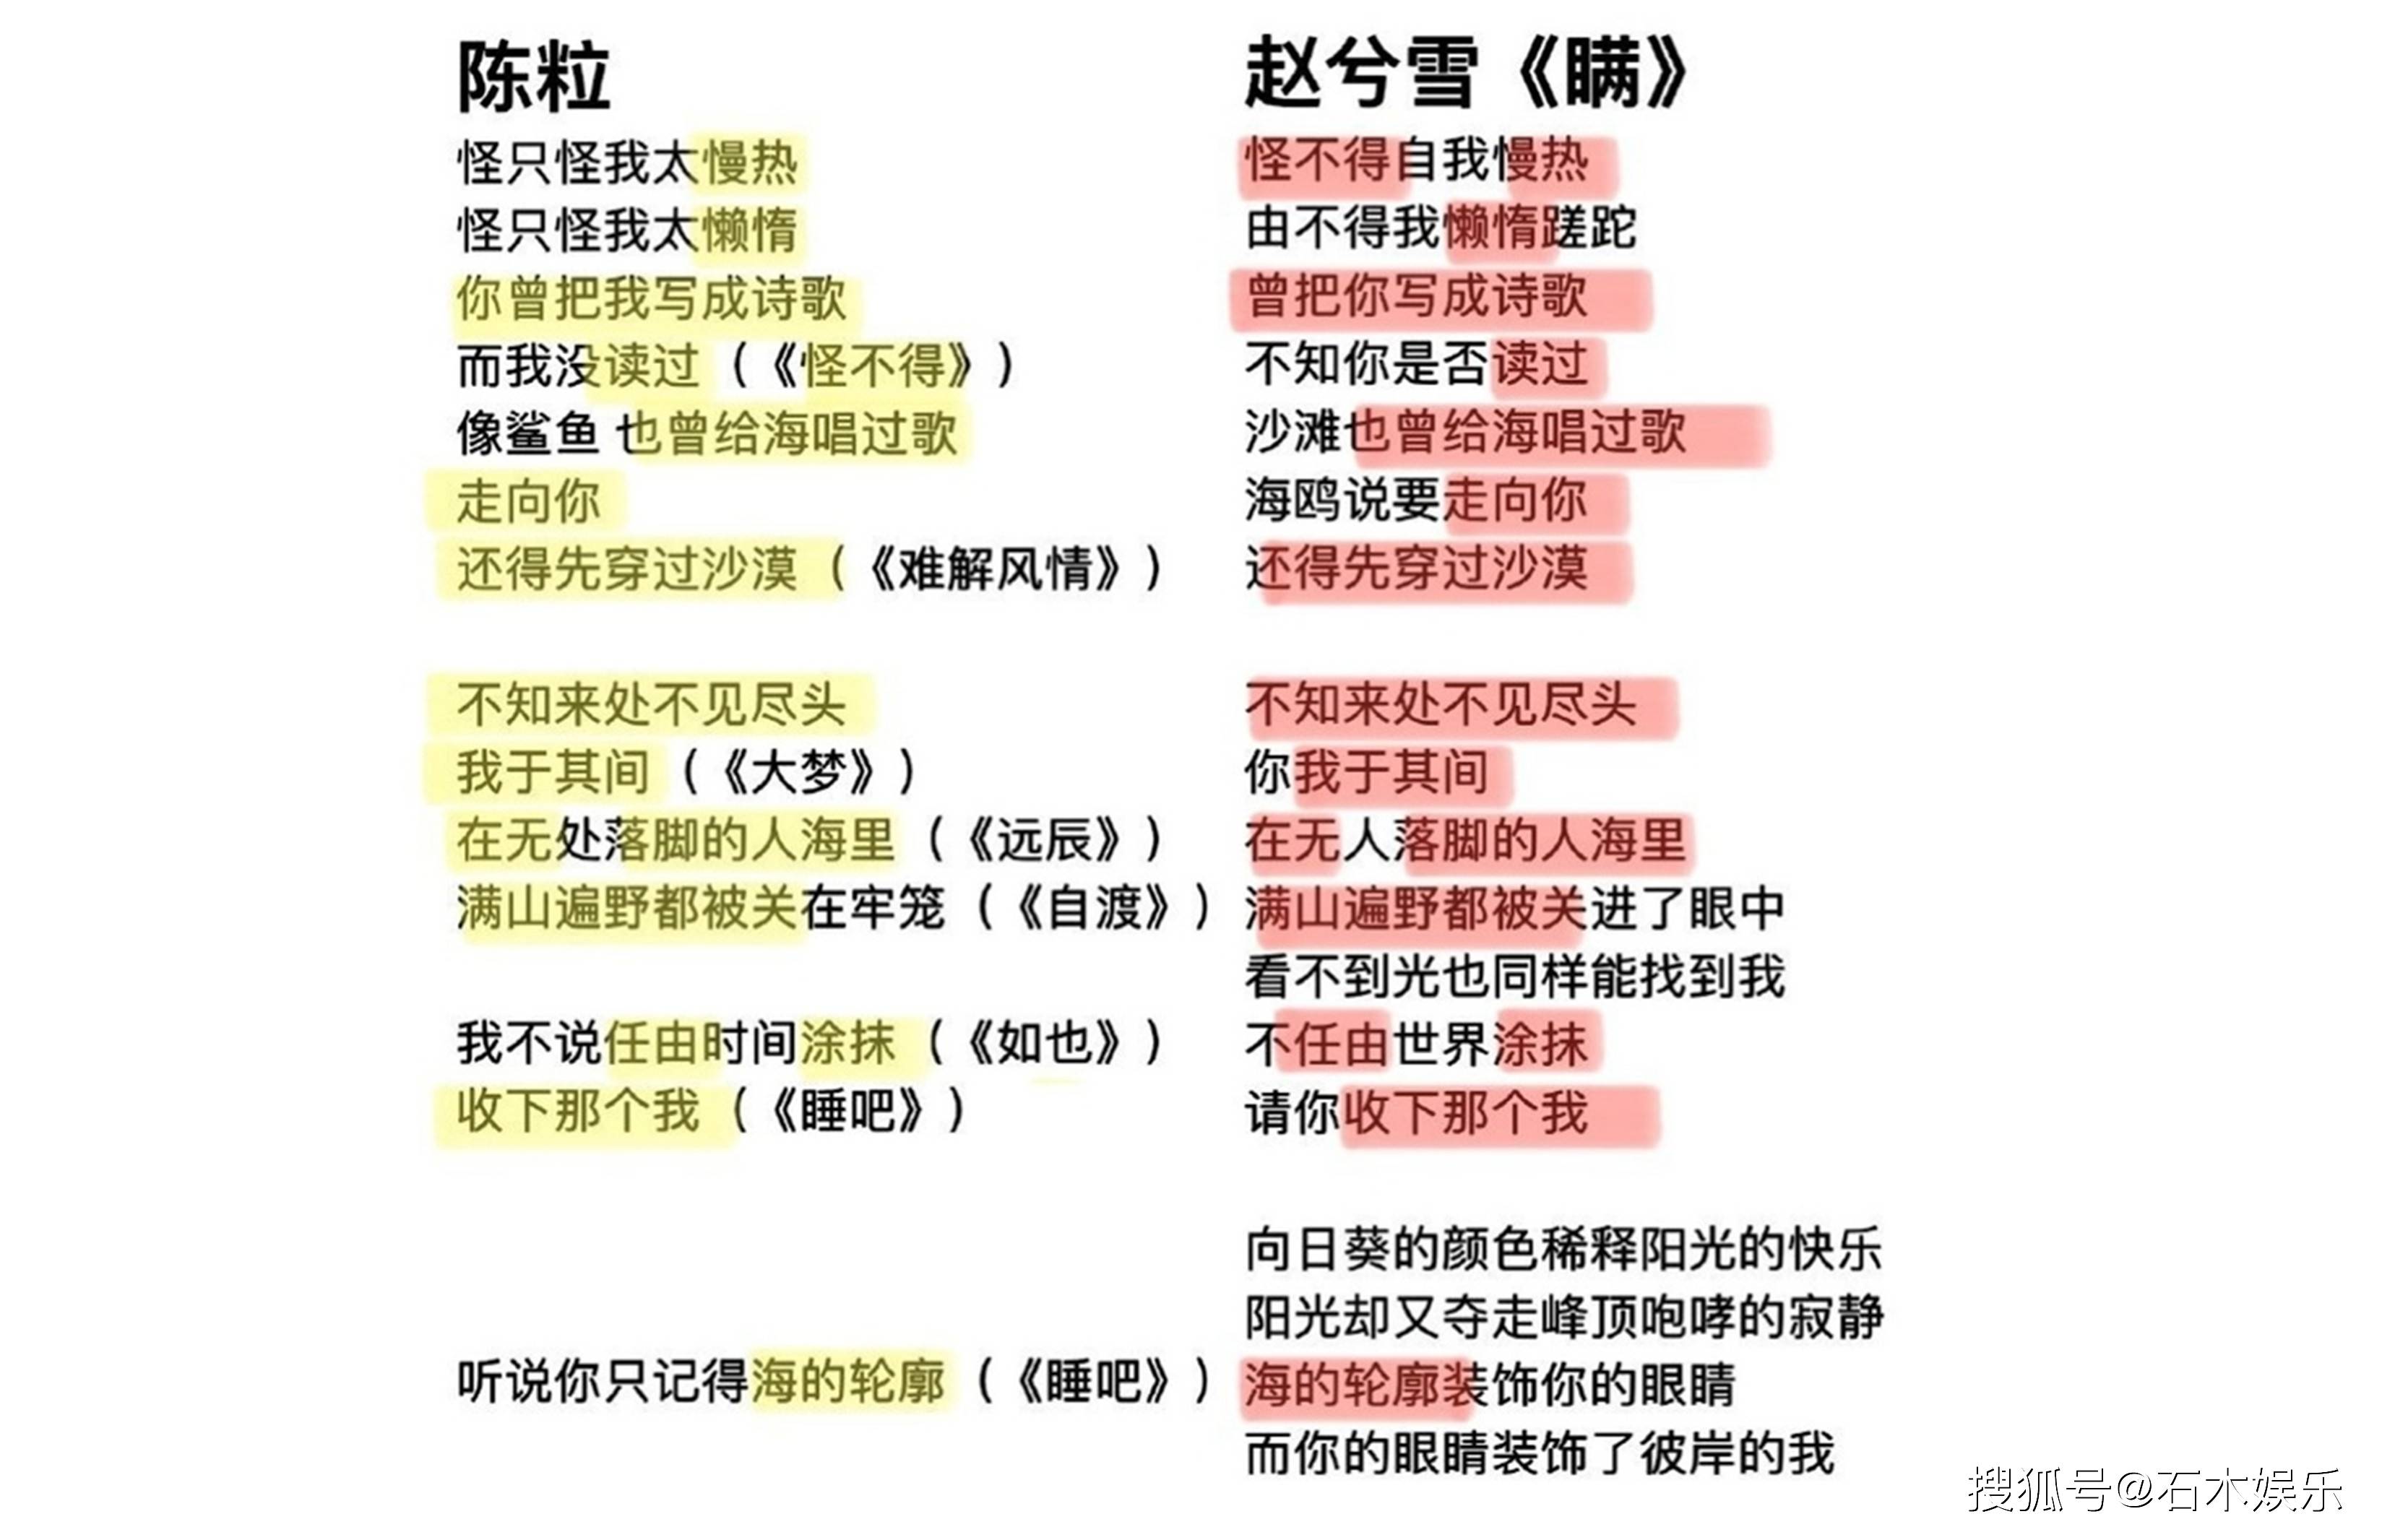 起因是有网友发现赵兮雪的诗与陈粒的歌词有很大部分的重叠,于是向其